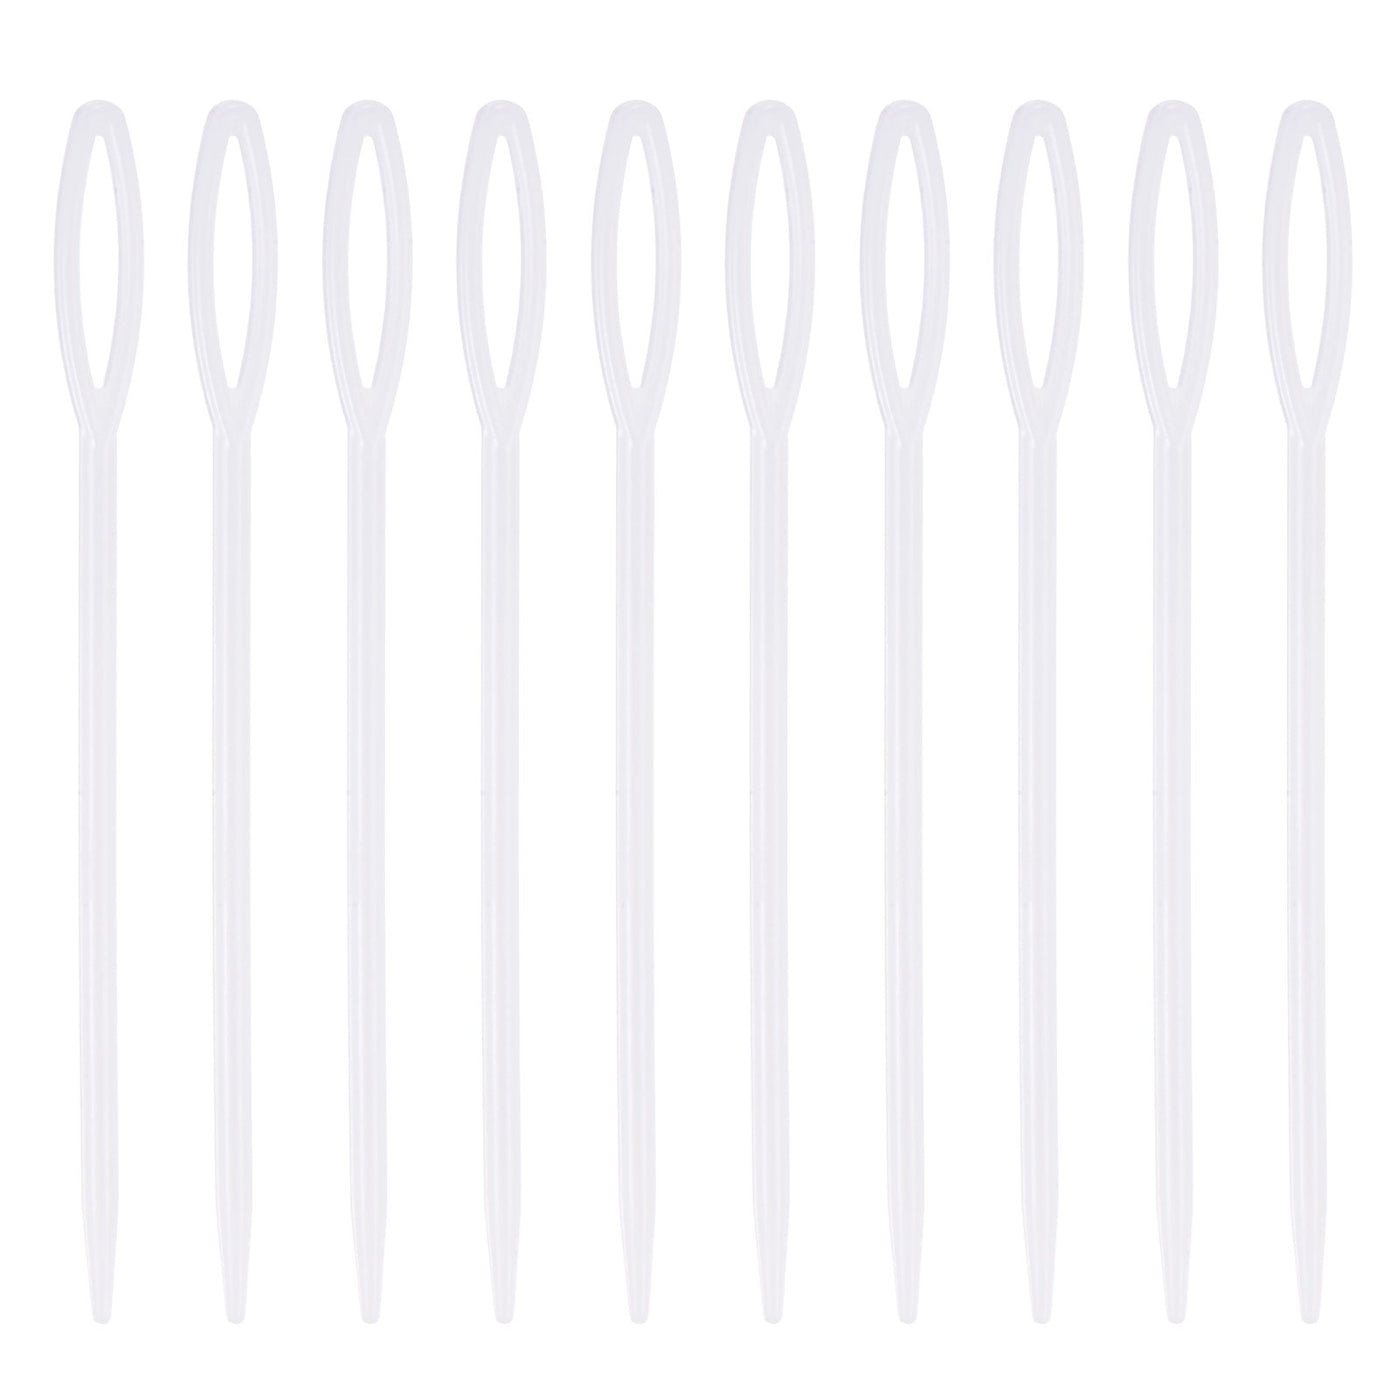 Harfington 150pcs Plastic Sewing Needles, 9cm Large Eye Blunt Learning Needles, White